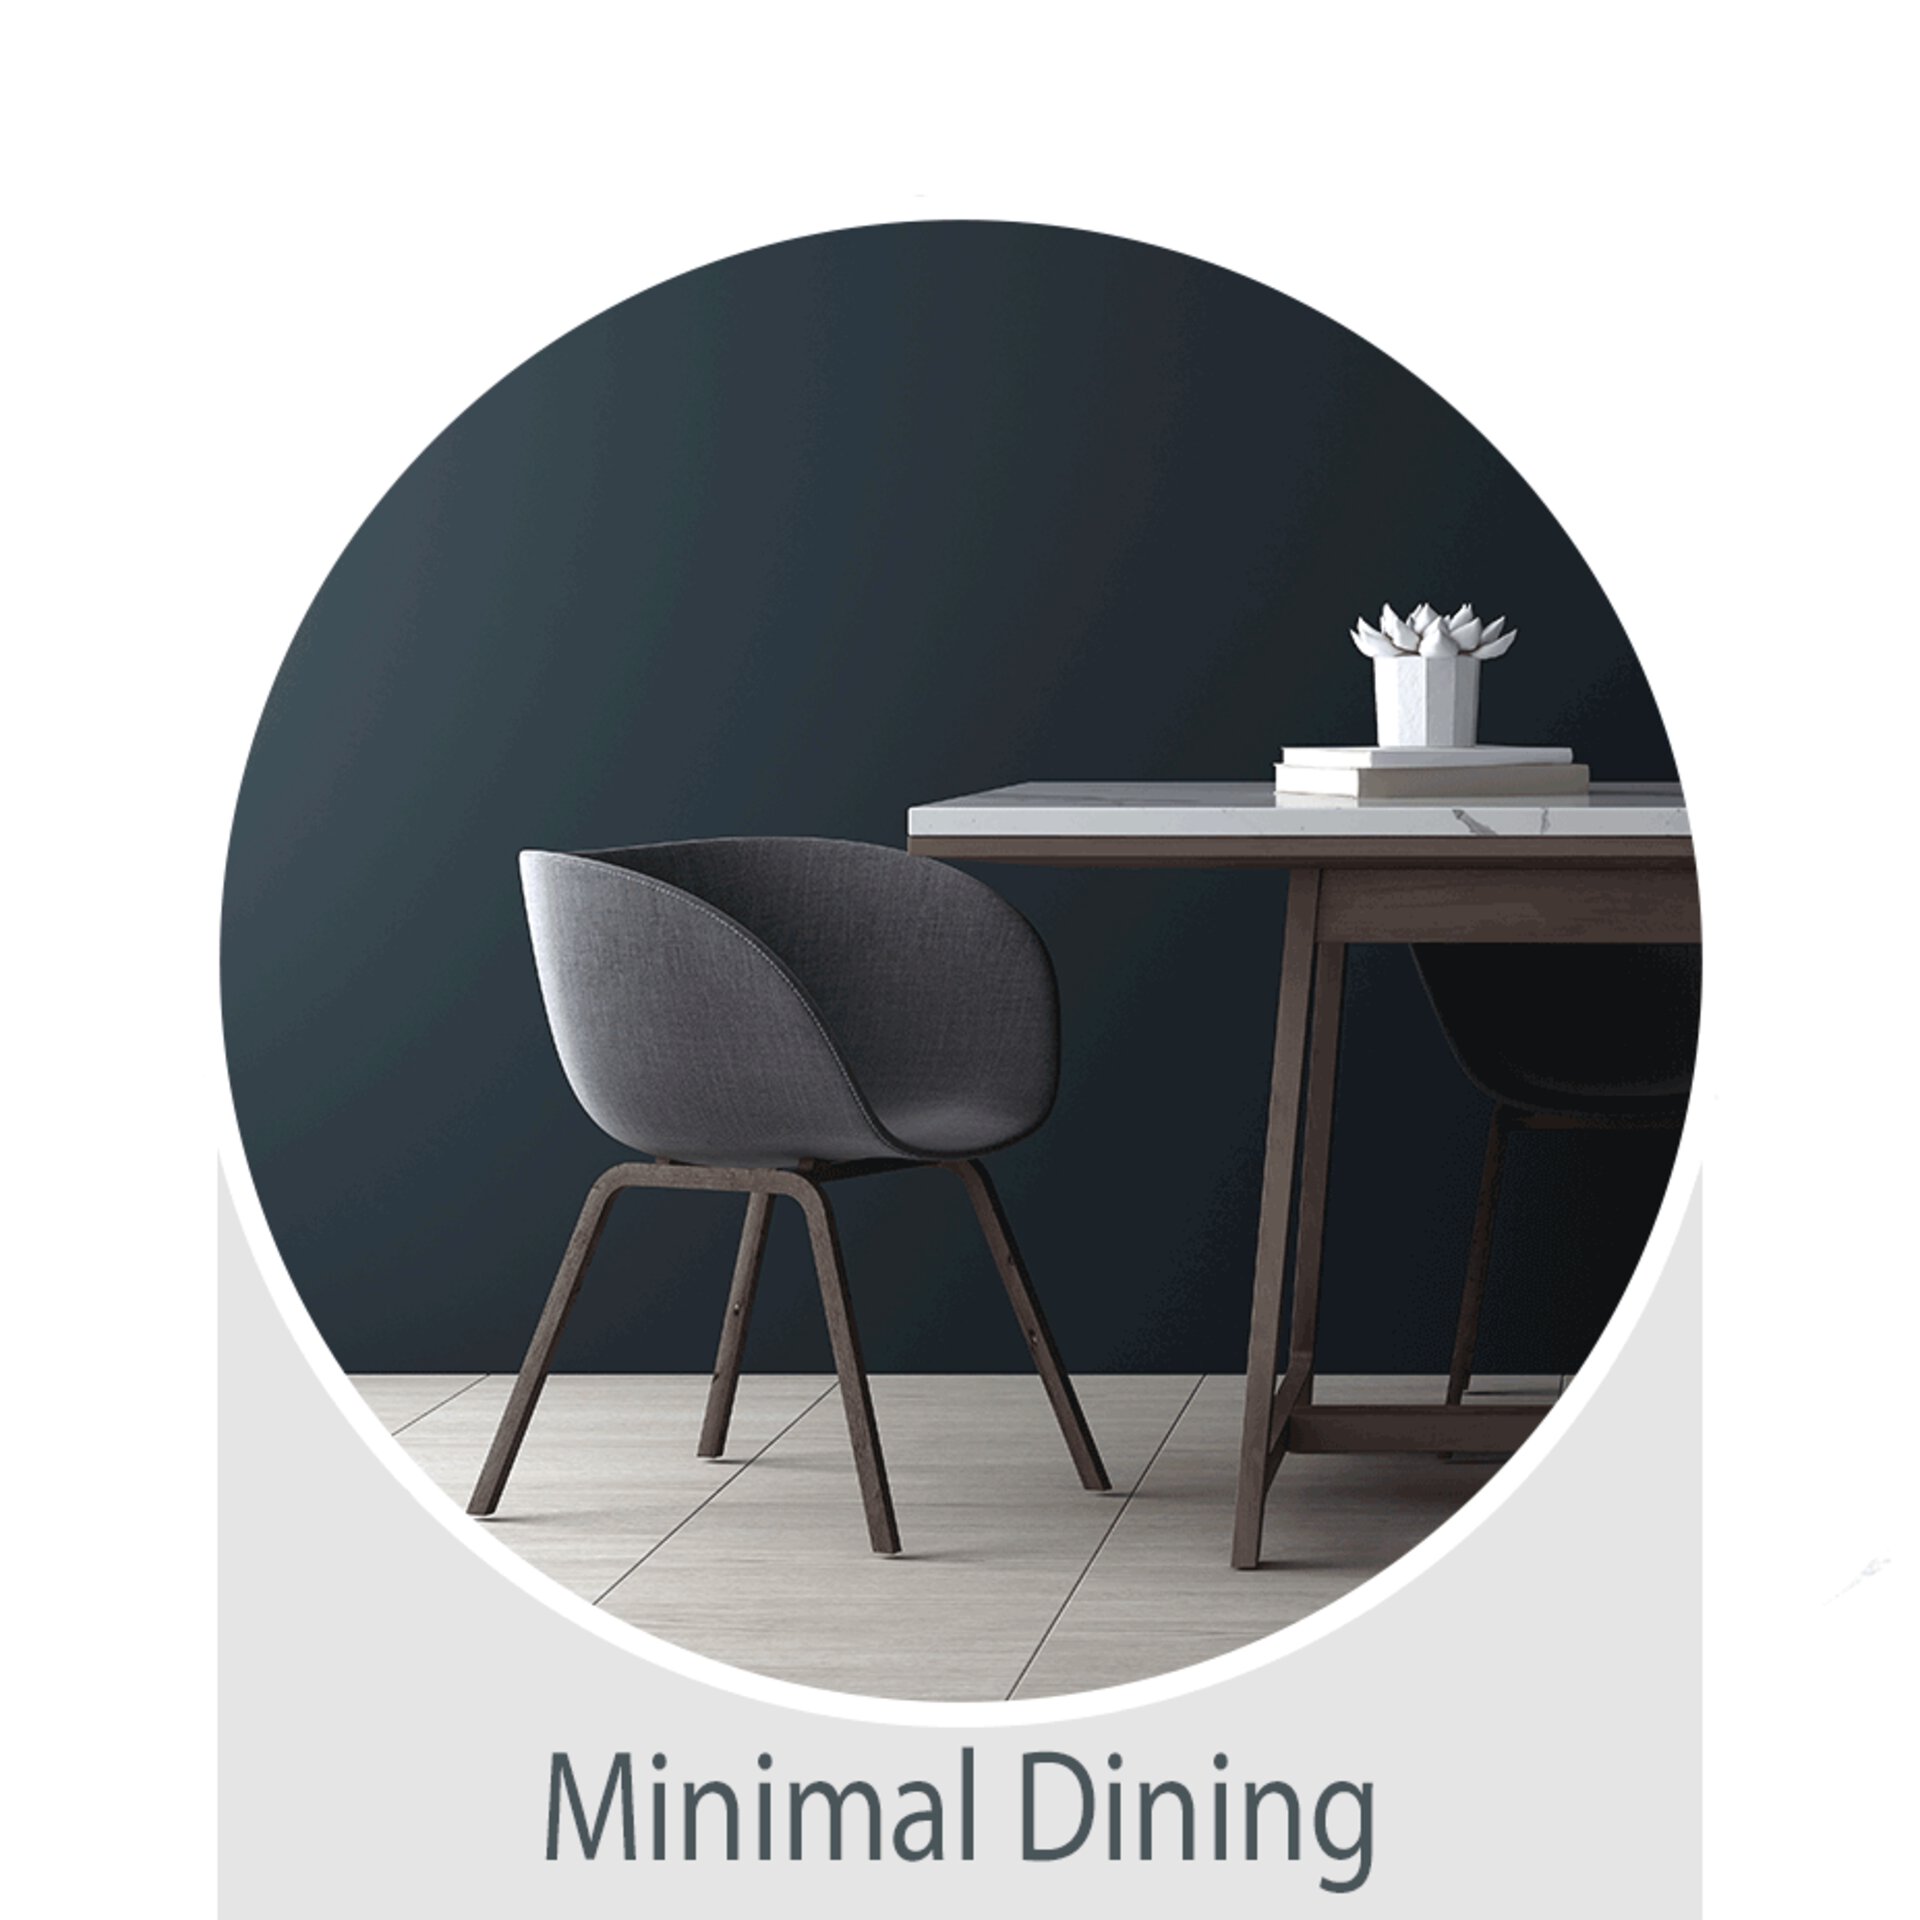 Der Wohntrend Minimal Dining-  jetzt bei Möbel Inhofer entdecken und inspirieren lassen